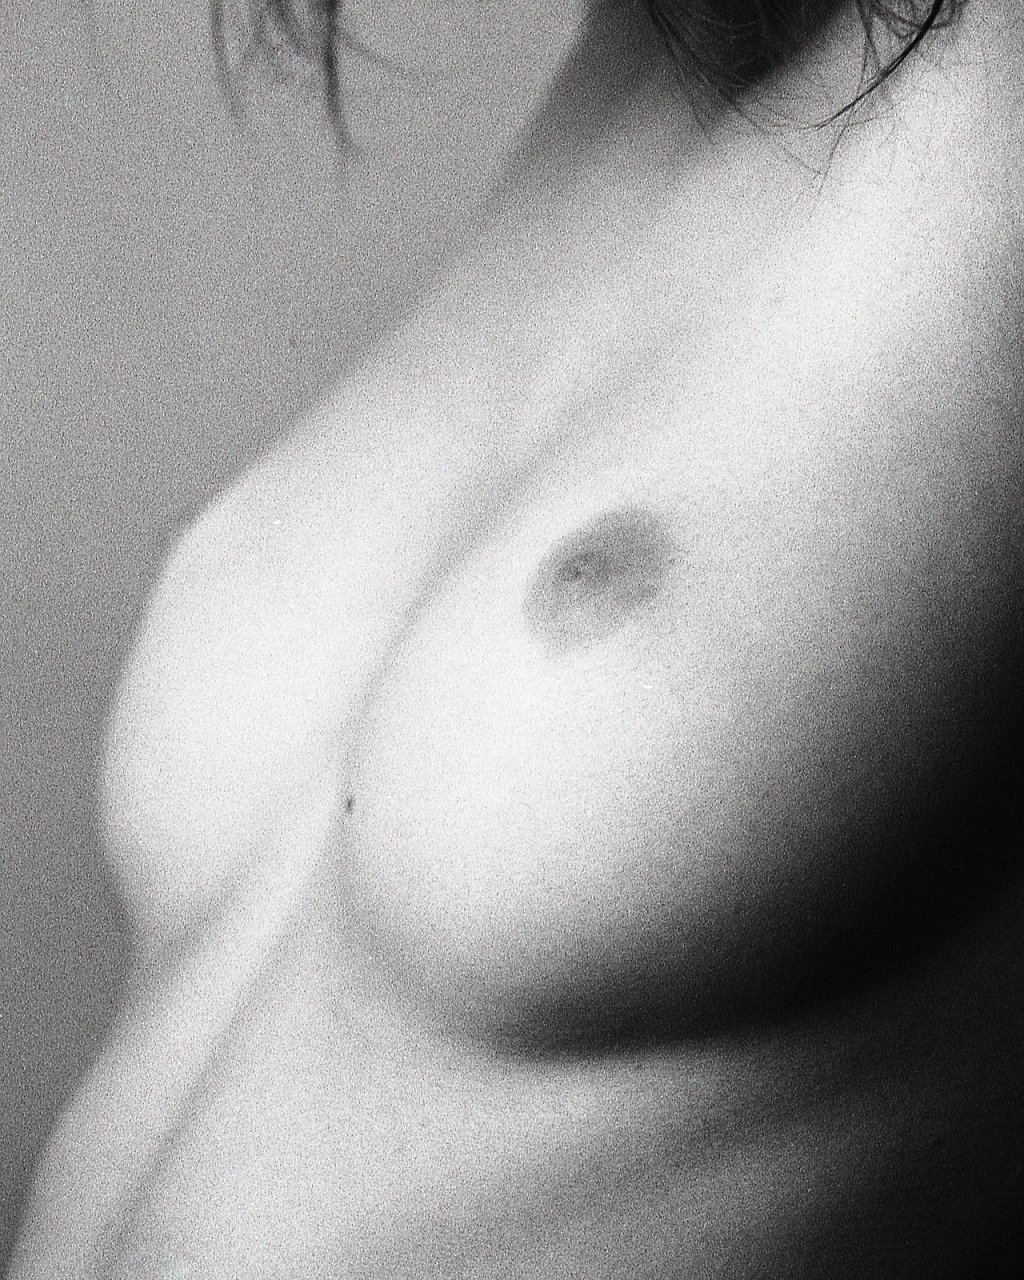 Ella Weisskamp Topless  Sexy (17 Photos)